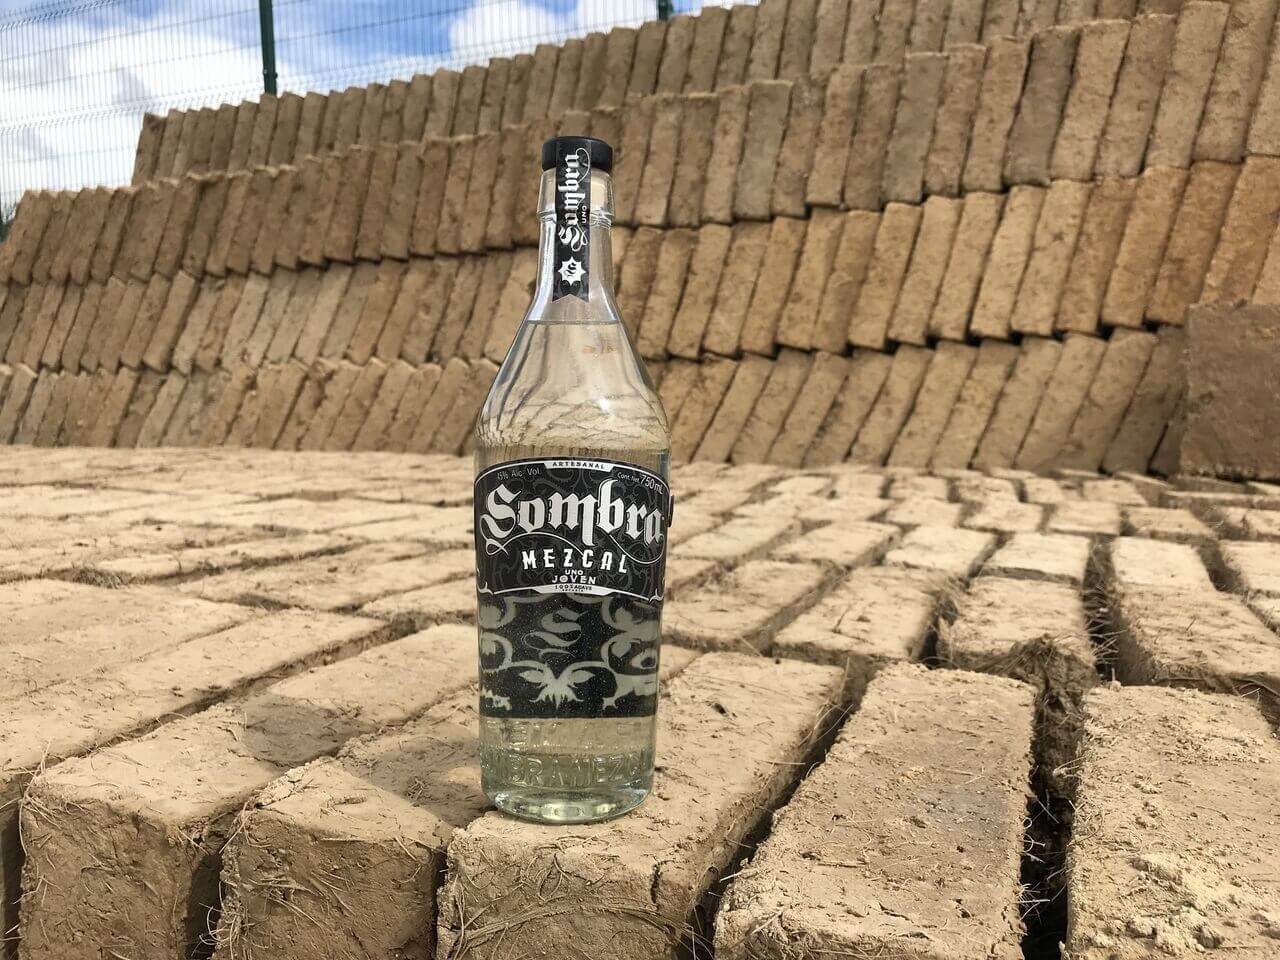 Sombra Mezcal bottle on steps